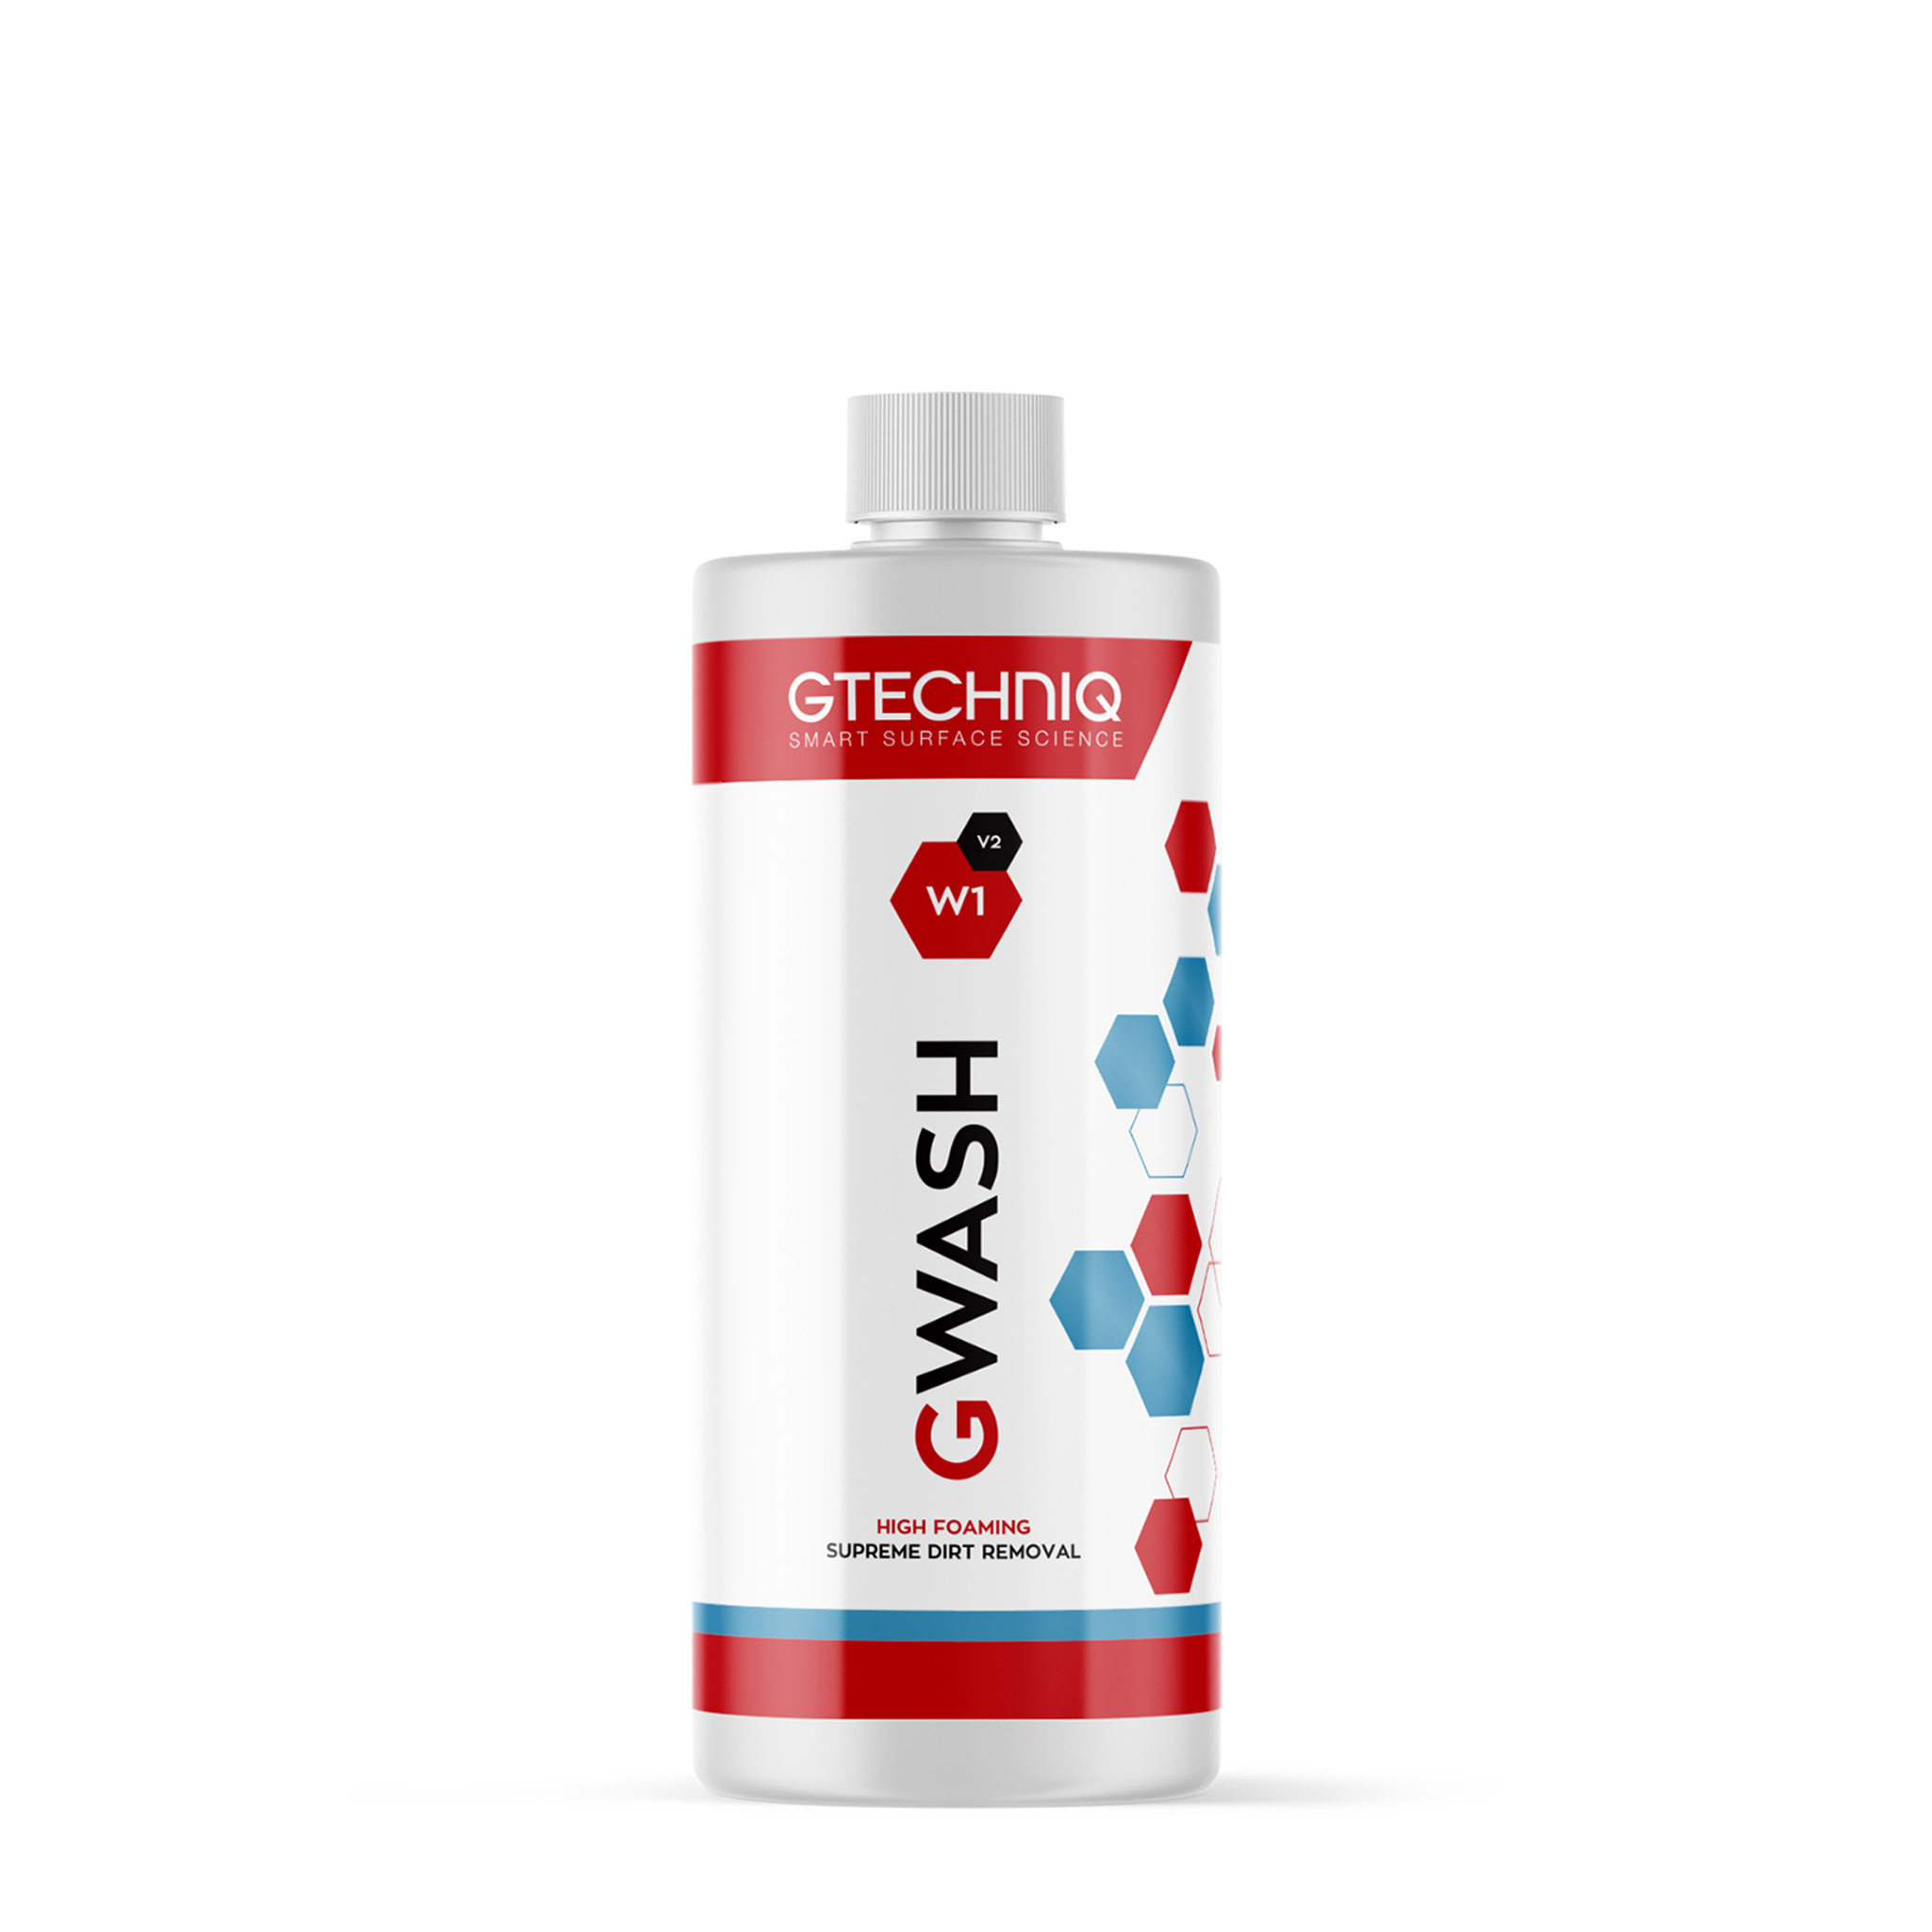 Bilschampo Gtechniq W1 GWash V2, 1000 ml